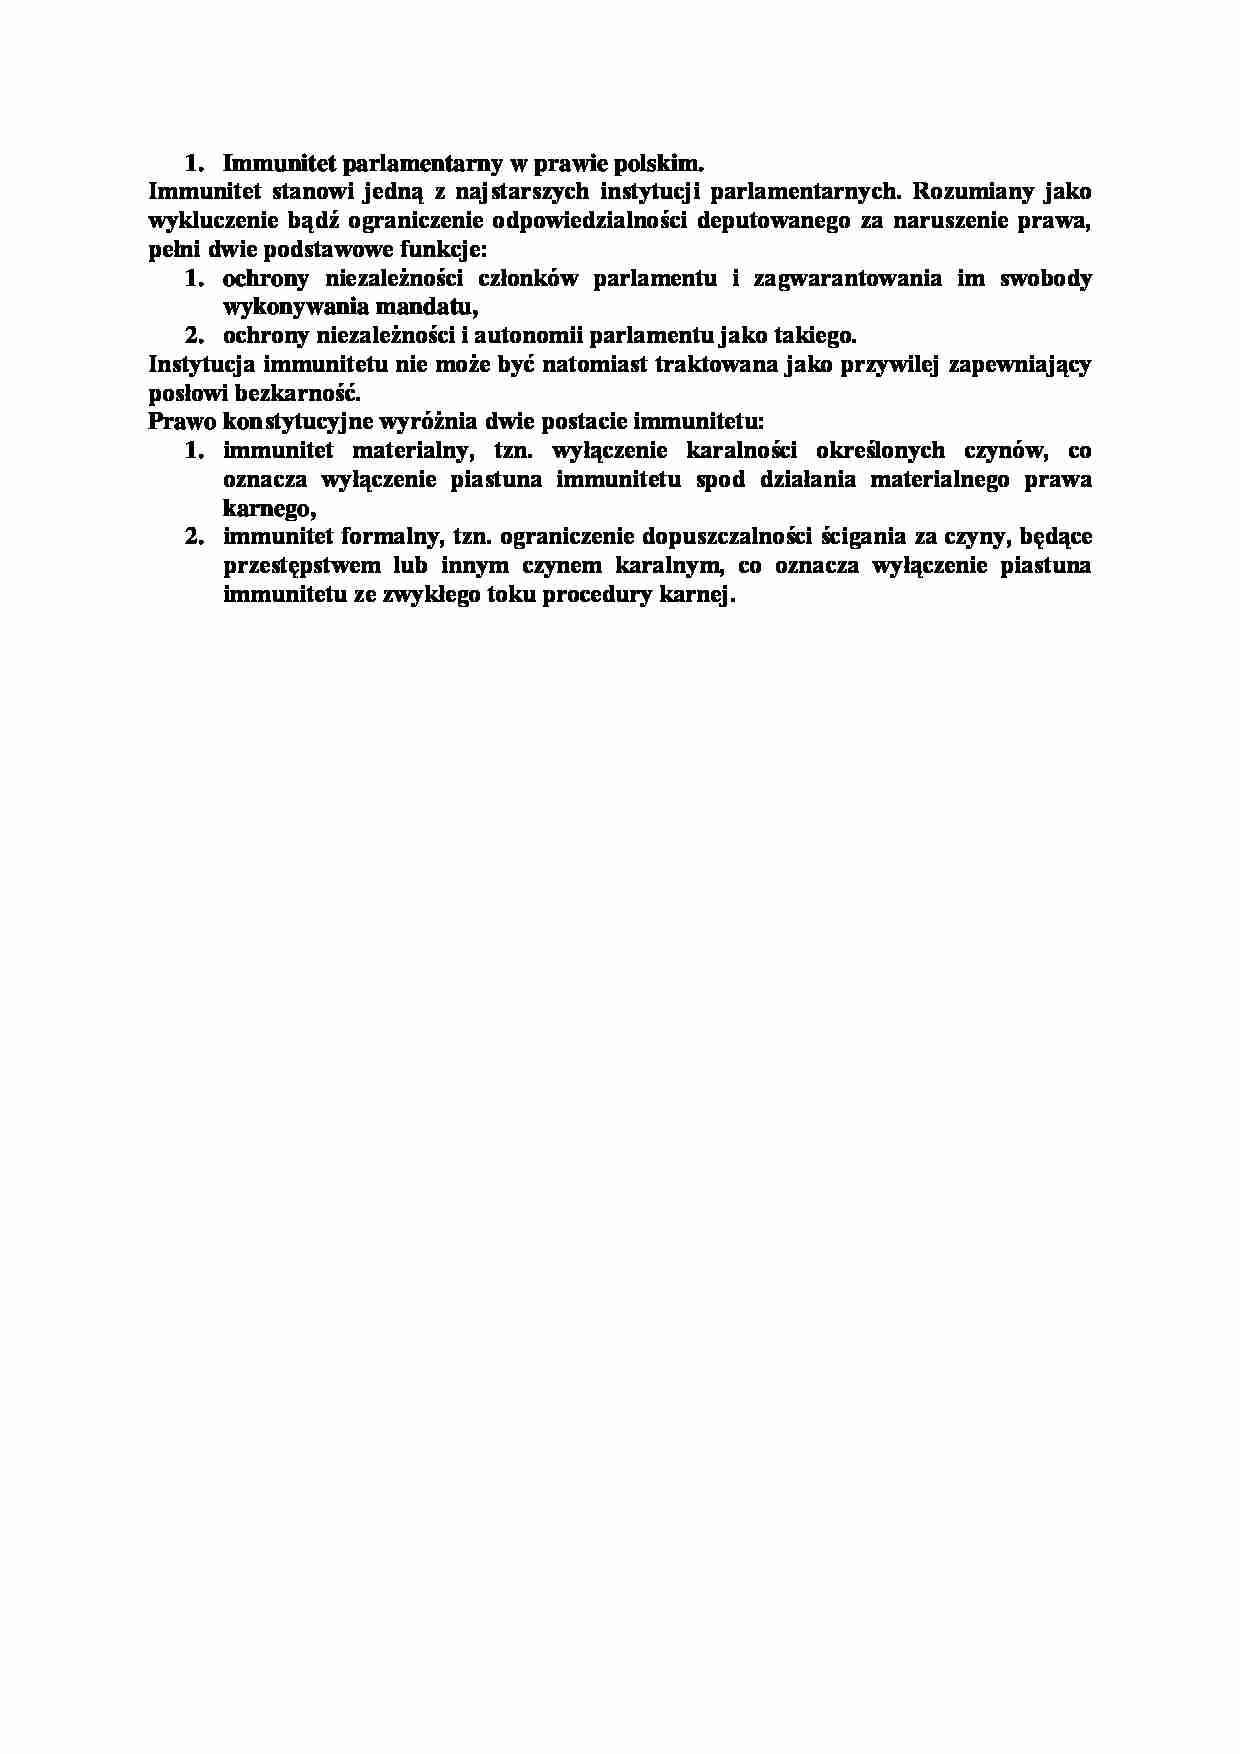 Immunitet parlamentarny w prawie polskim-opracowanie - strona 1